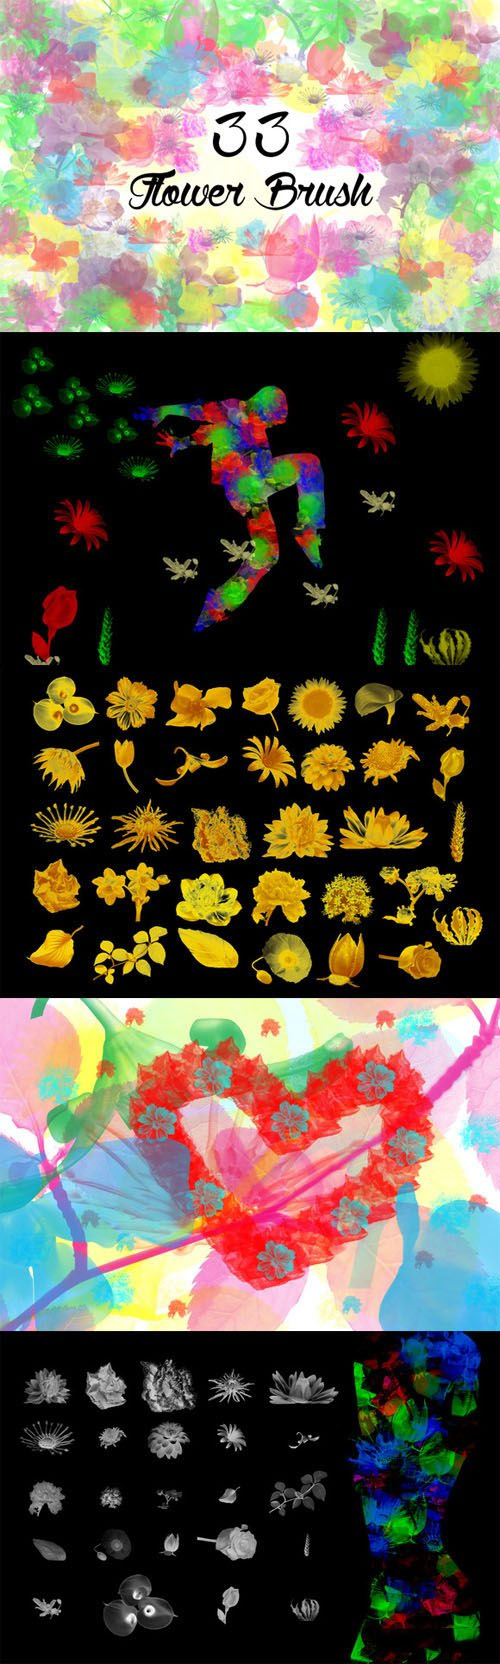 3个水彩花卉PS笔刷透明素材,花卉,花卉笔刷,PS笔刷"